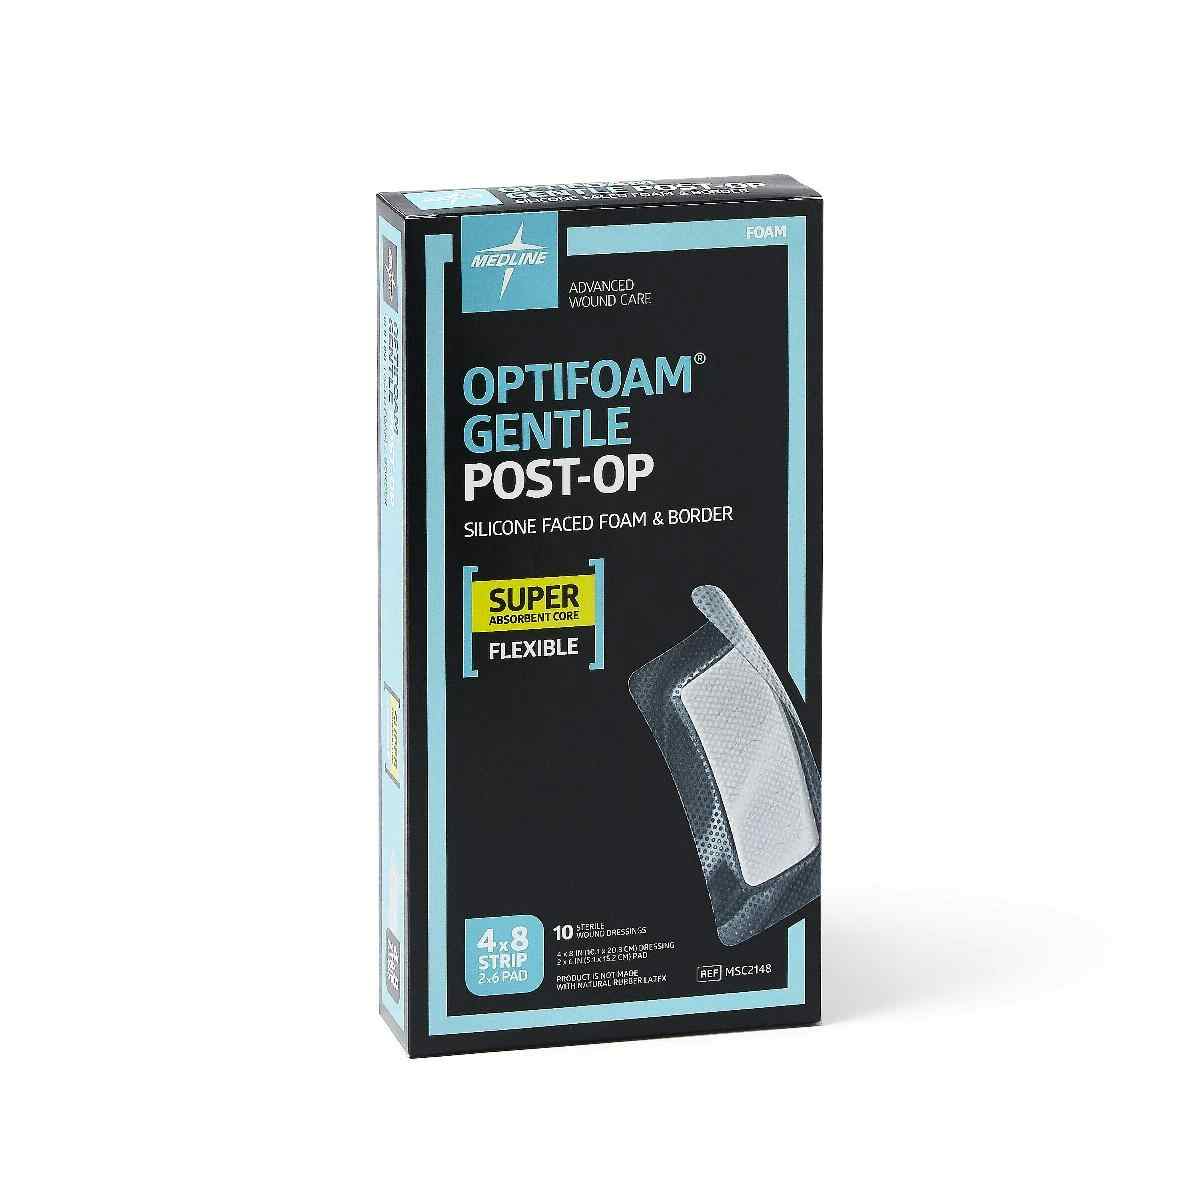 Optifoam Gentle Post-Op Silicone-Faced Foam Dressing, MSC2148Z, 4" X 8" - Box of 10 